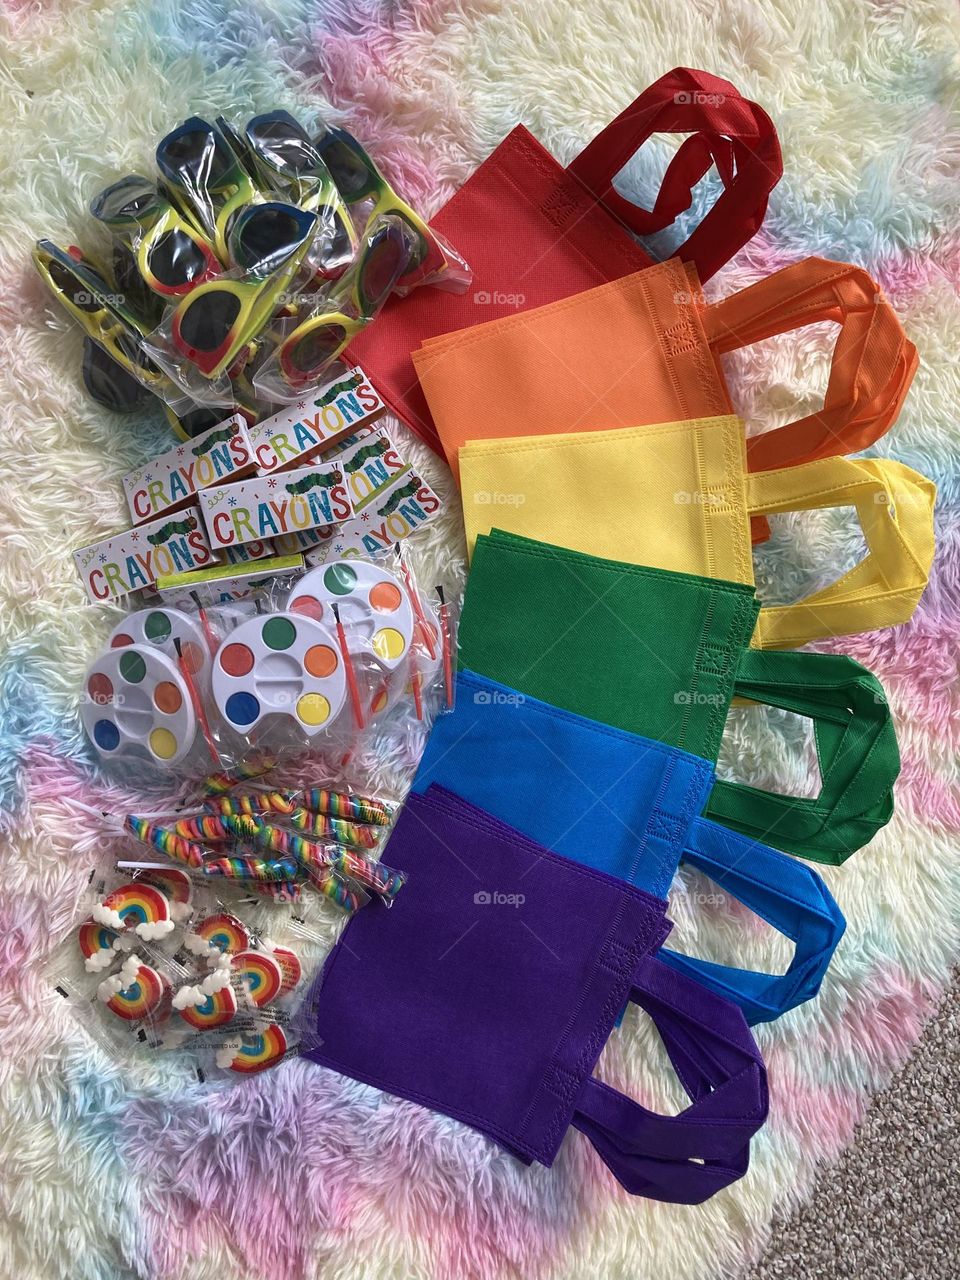 Rainbow goodie bags